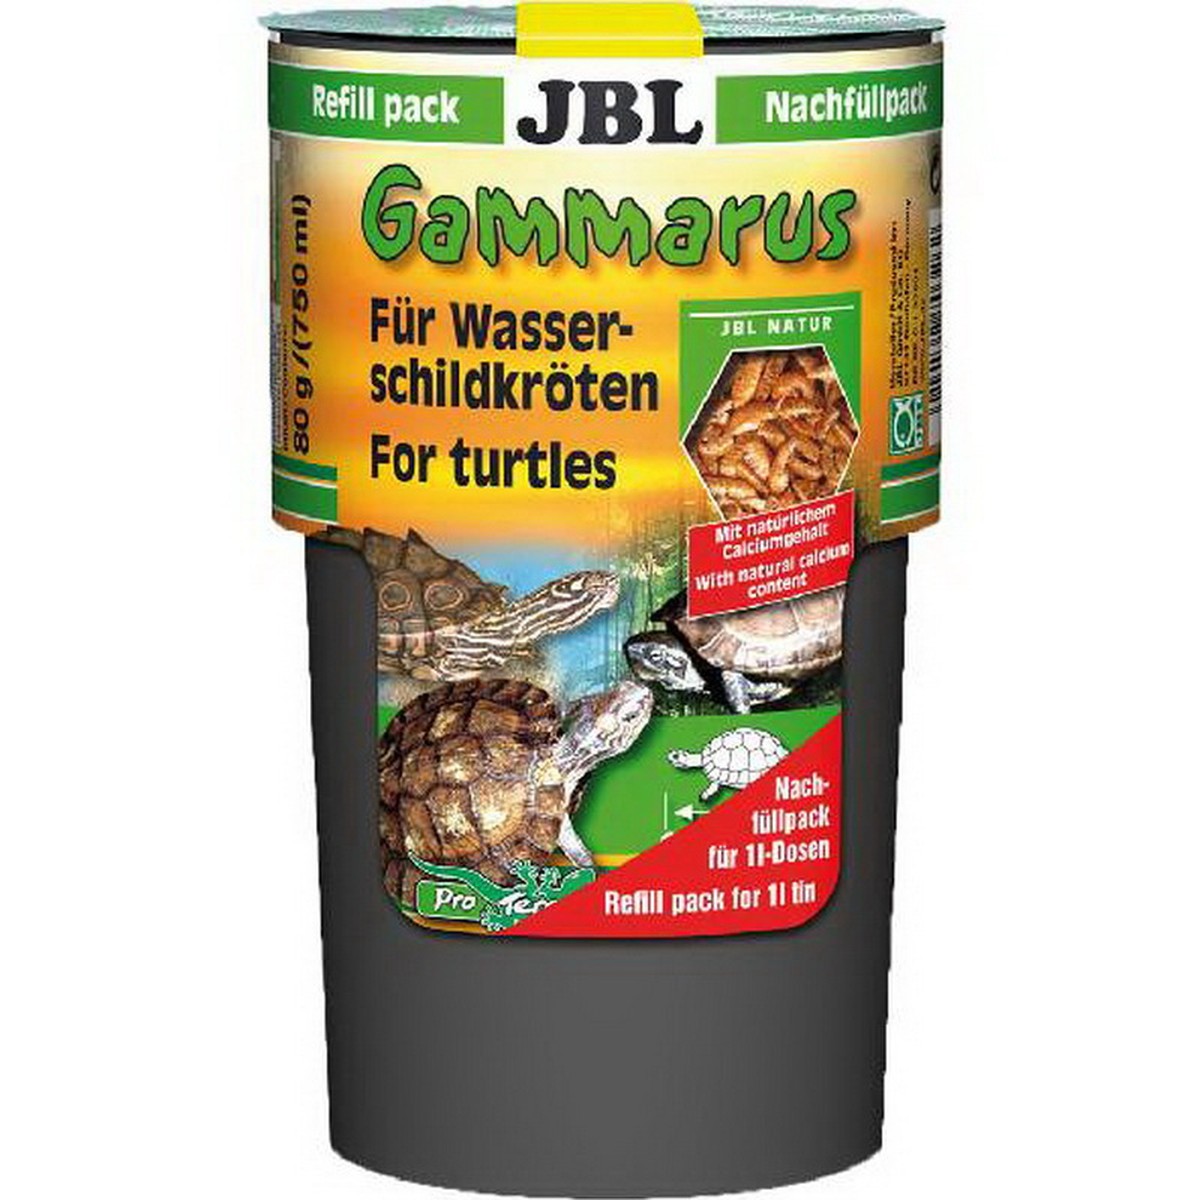   JBL Gammarus remplissage. 750 ml F/NL  750ml